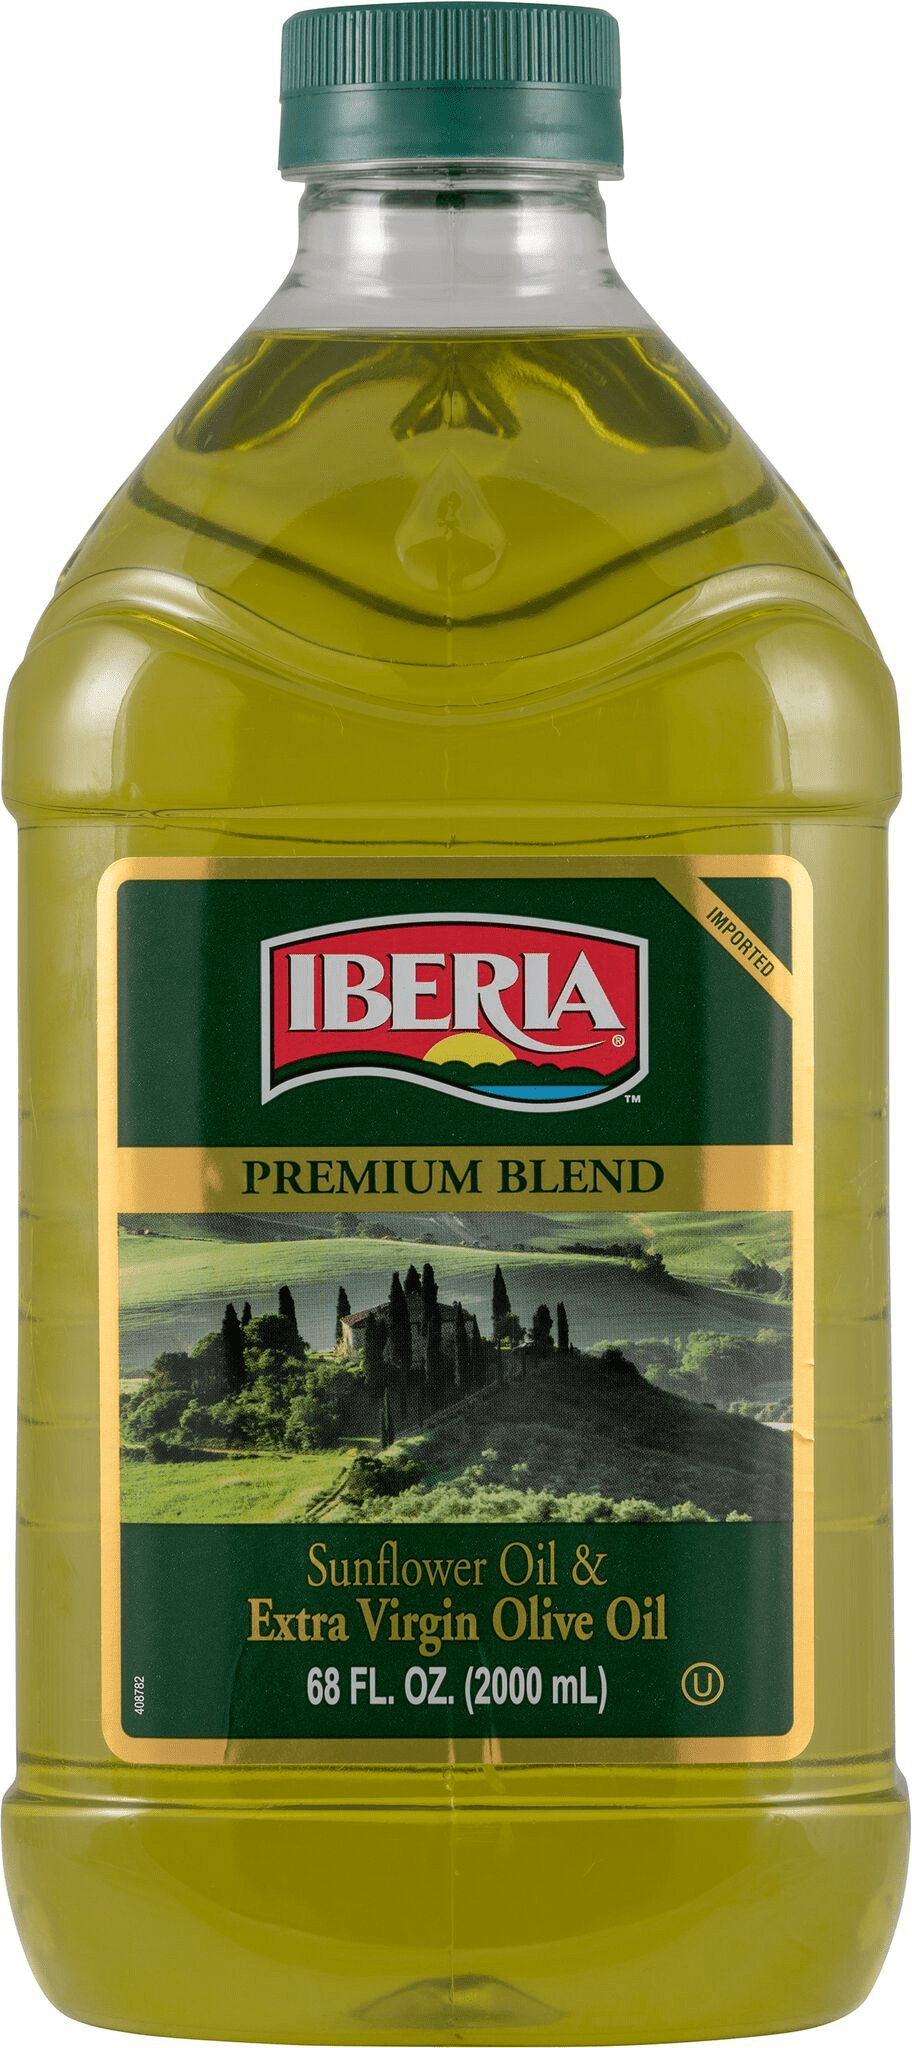 Iberia Extra Virgin Olive Oil & Sunflower Oil, 68 oz